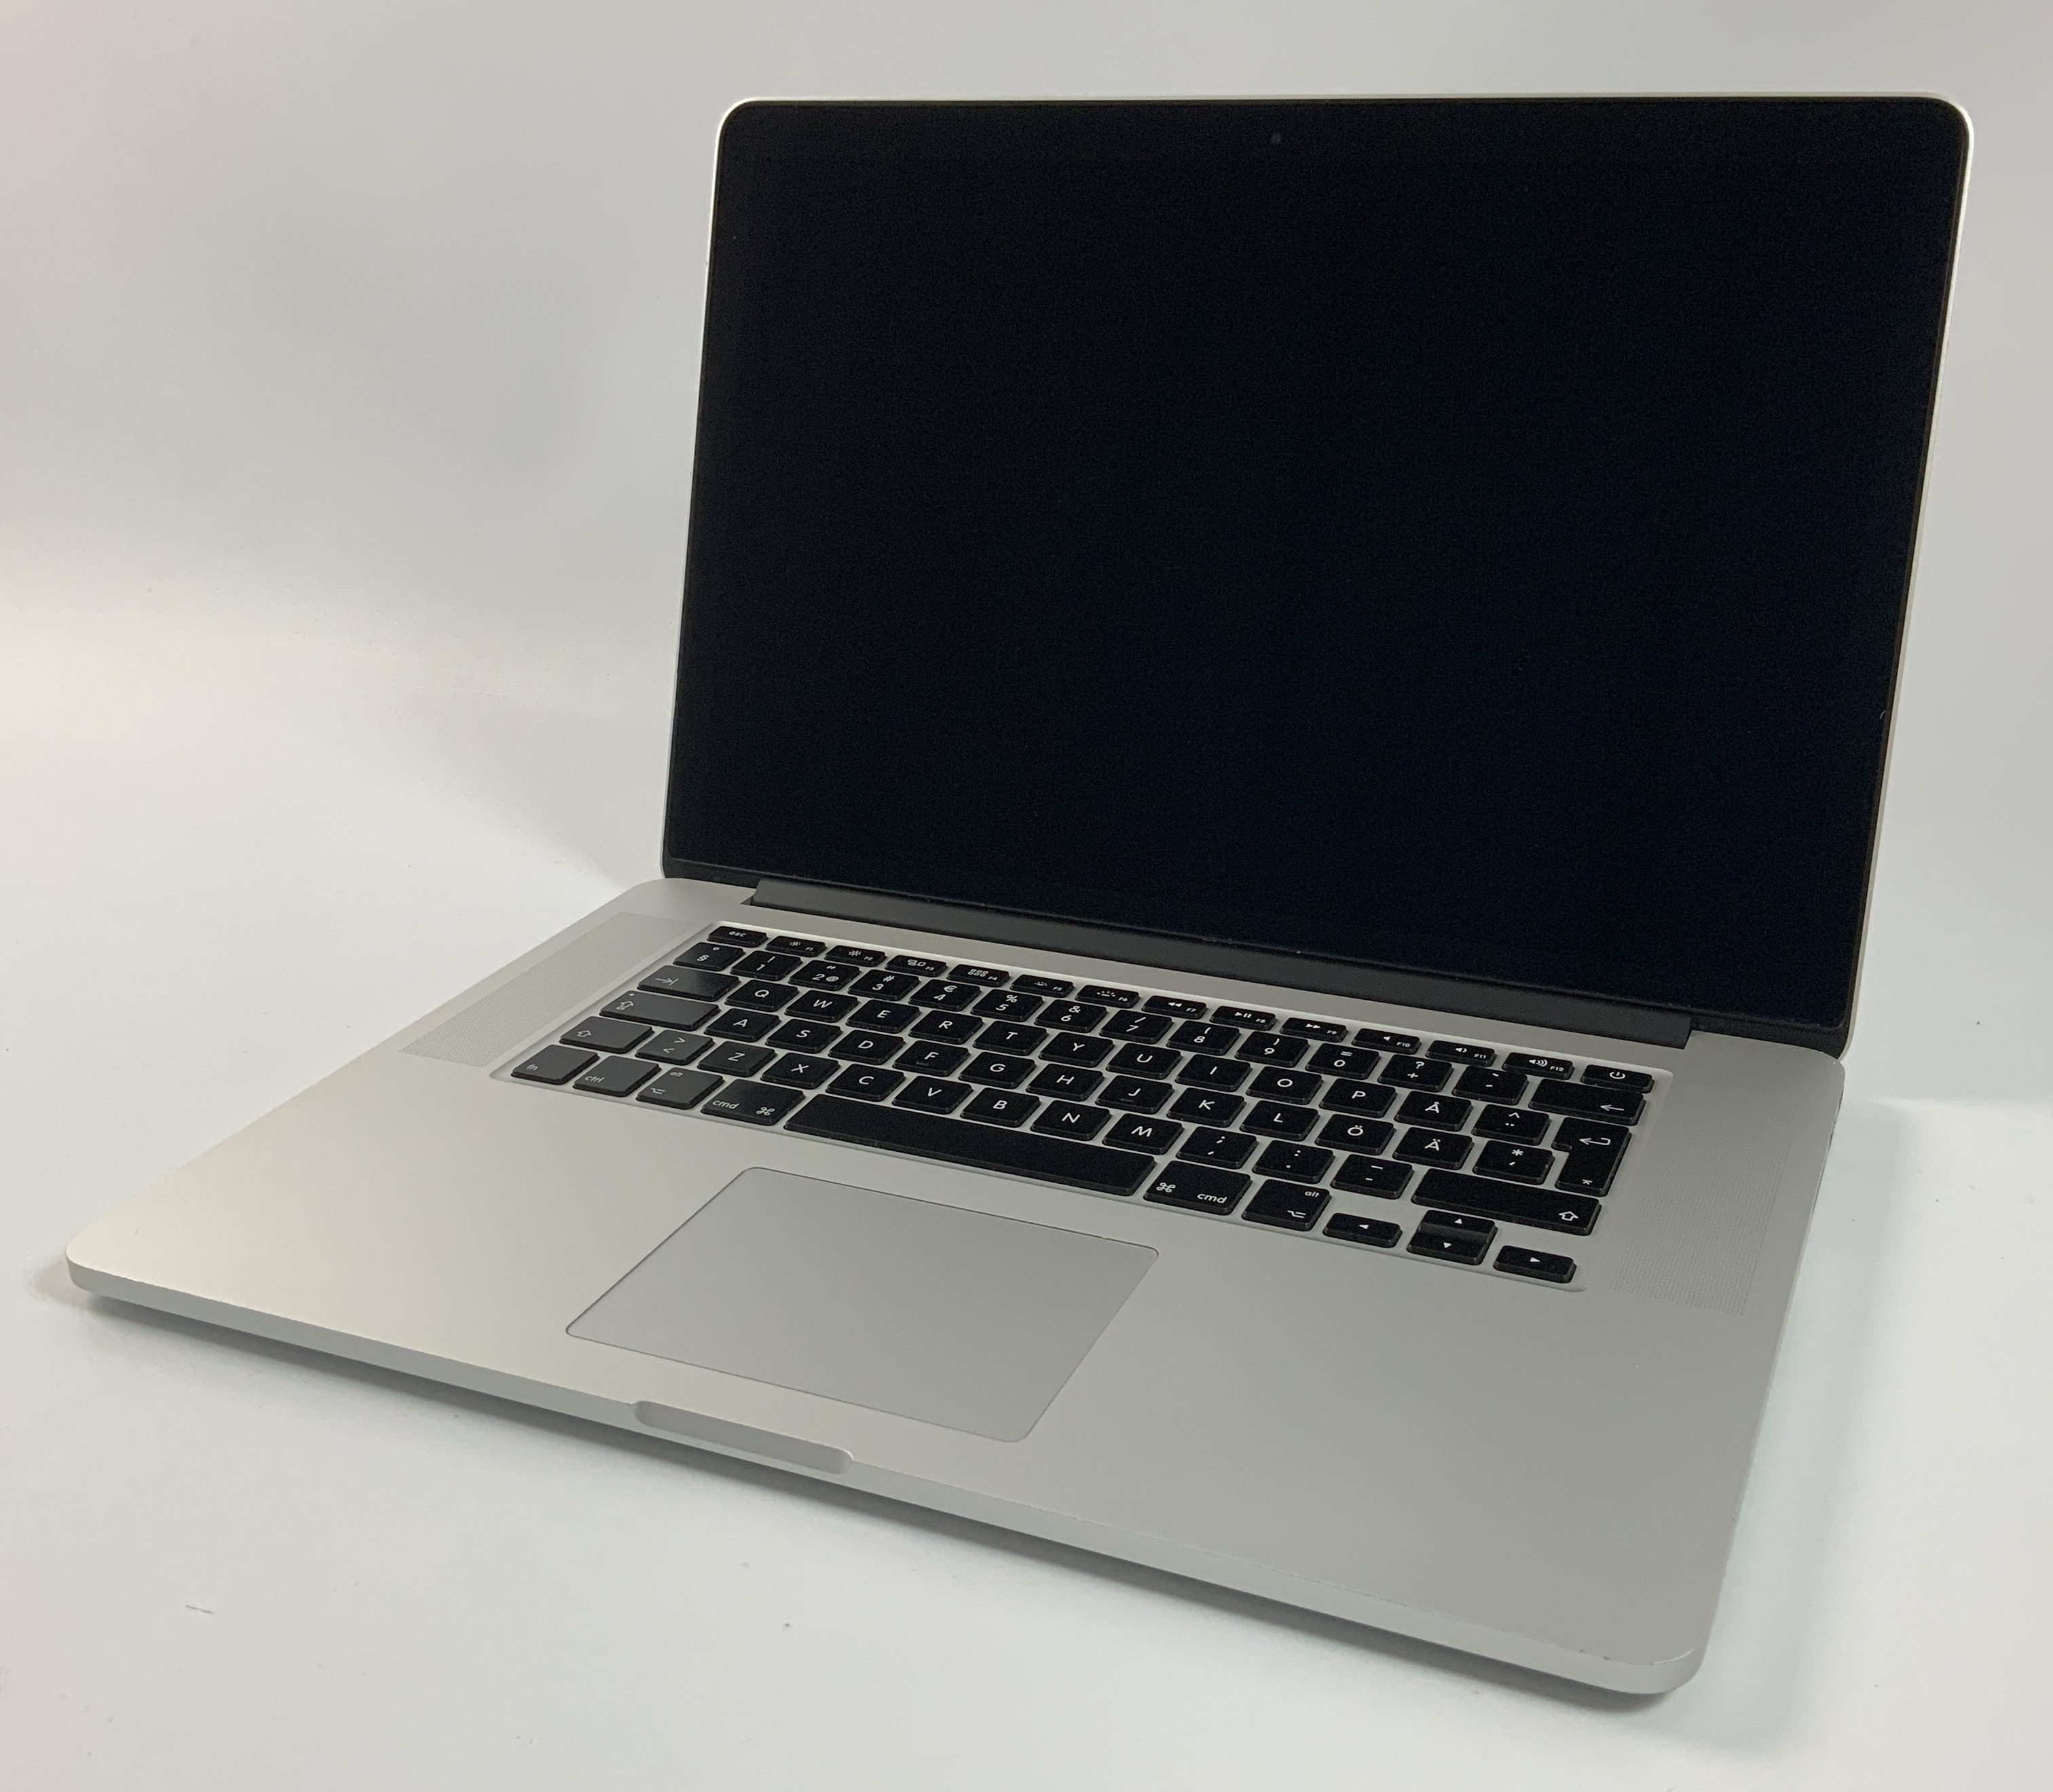 MacBook Pro Retina 15" Mid 2014 (Intel Quad-Core i7 2.2 GHz 16 GB RAM 256 GB SSD), Intel Quad-Core i7 2.2 GHz, 16 GB RAM, 256 GB SSD, Kuva 1